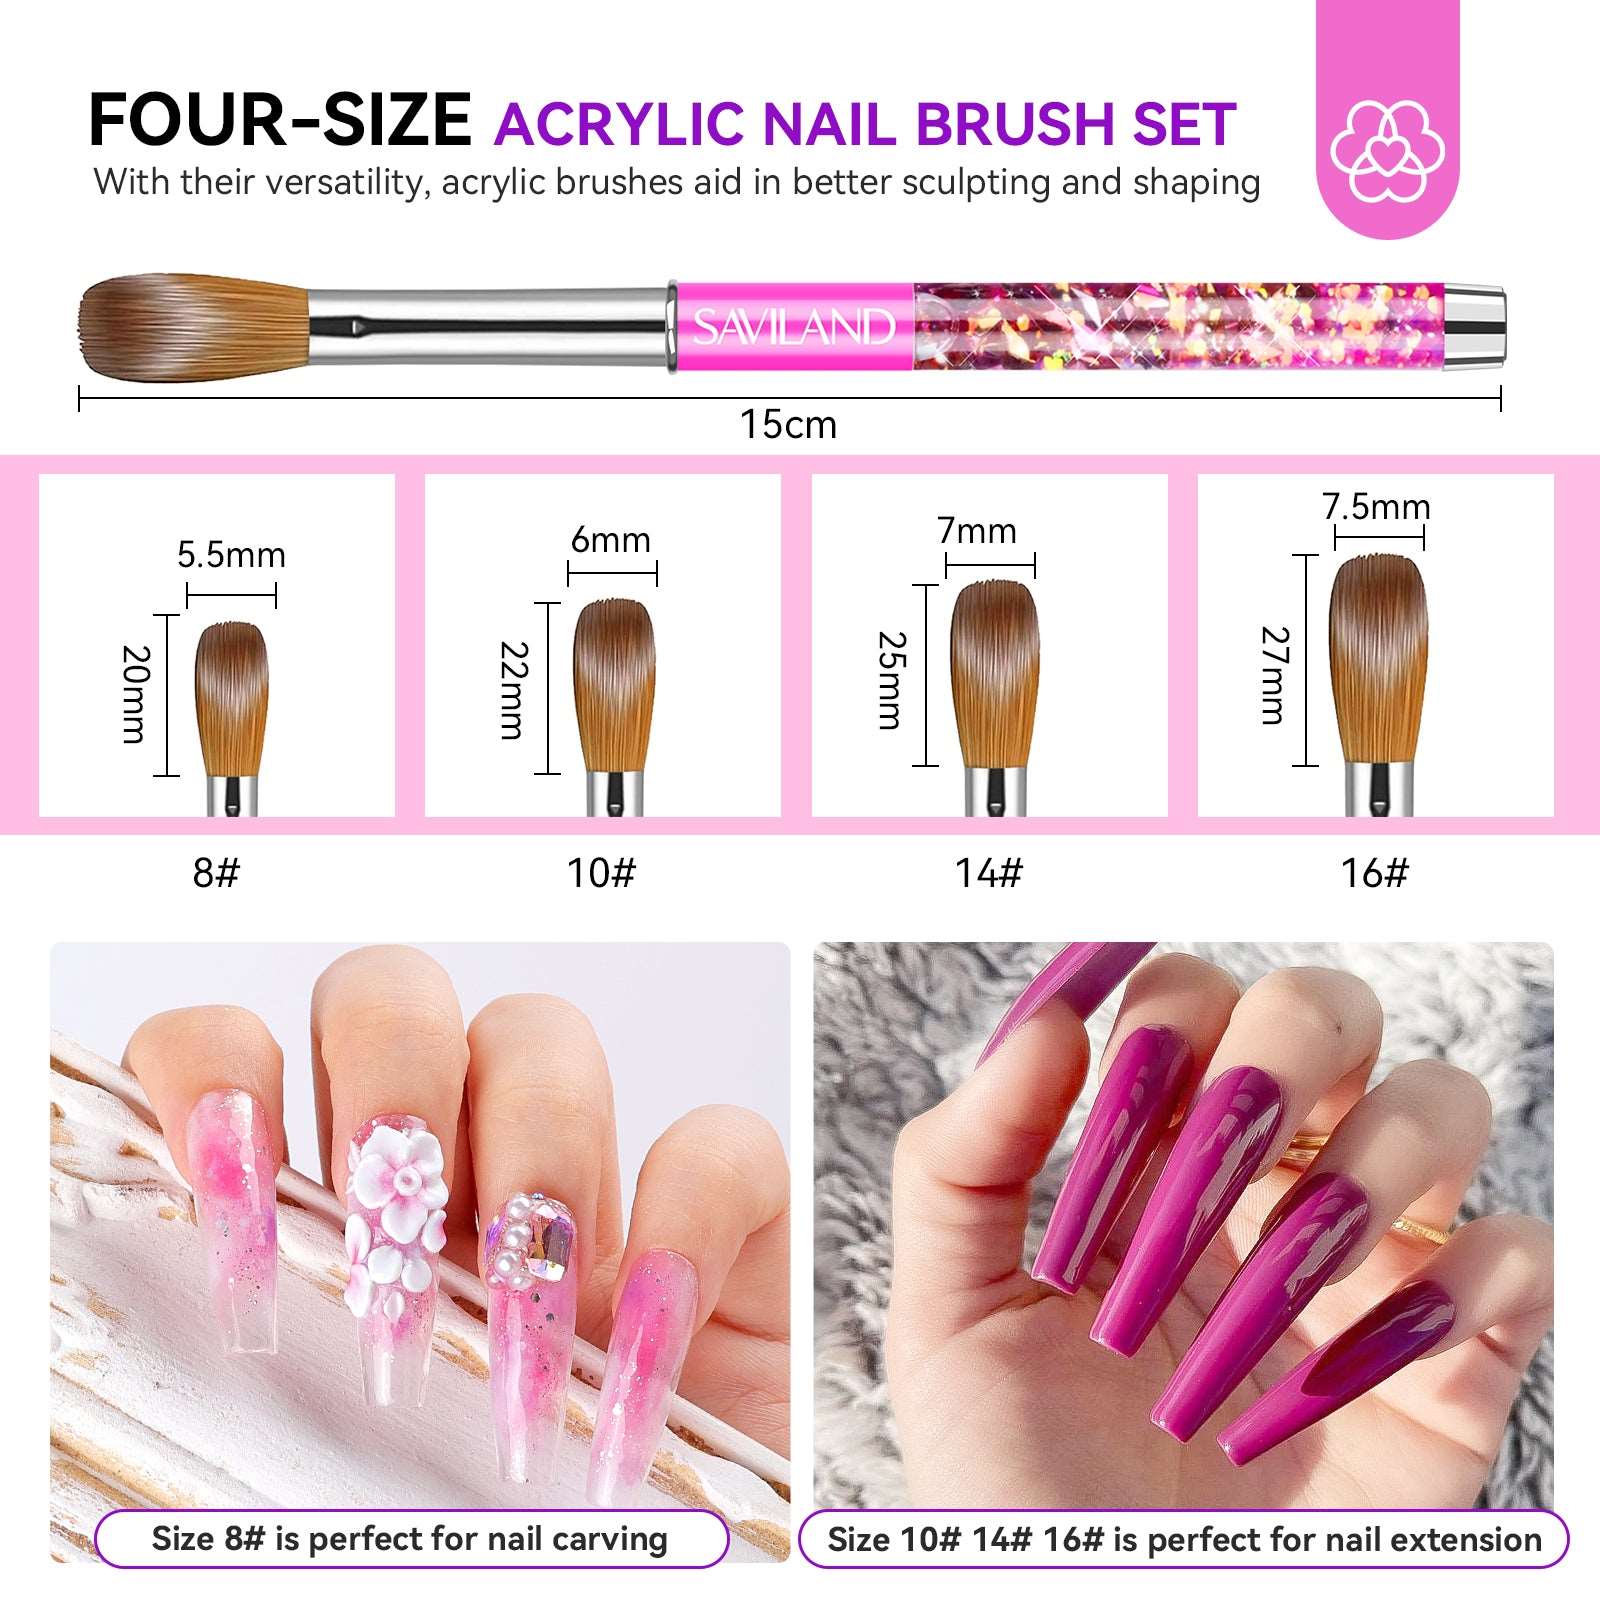 3PCS Acrylic Nail Brush Set - Size 8/10/14 Kolinsky Acrylic Nail Brushes